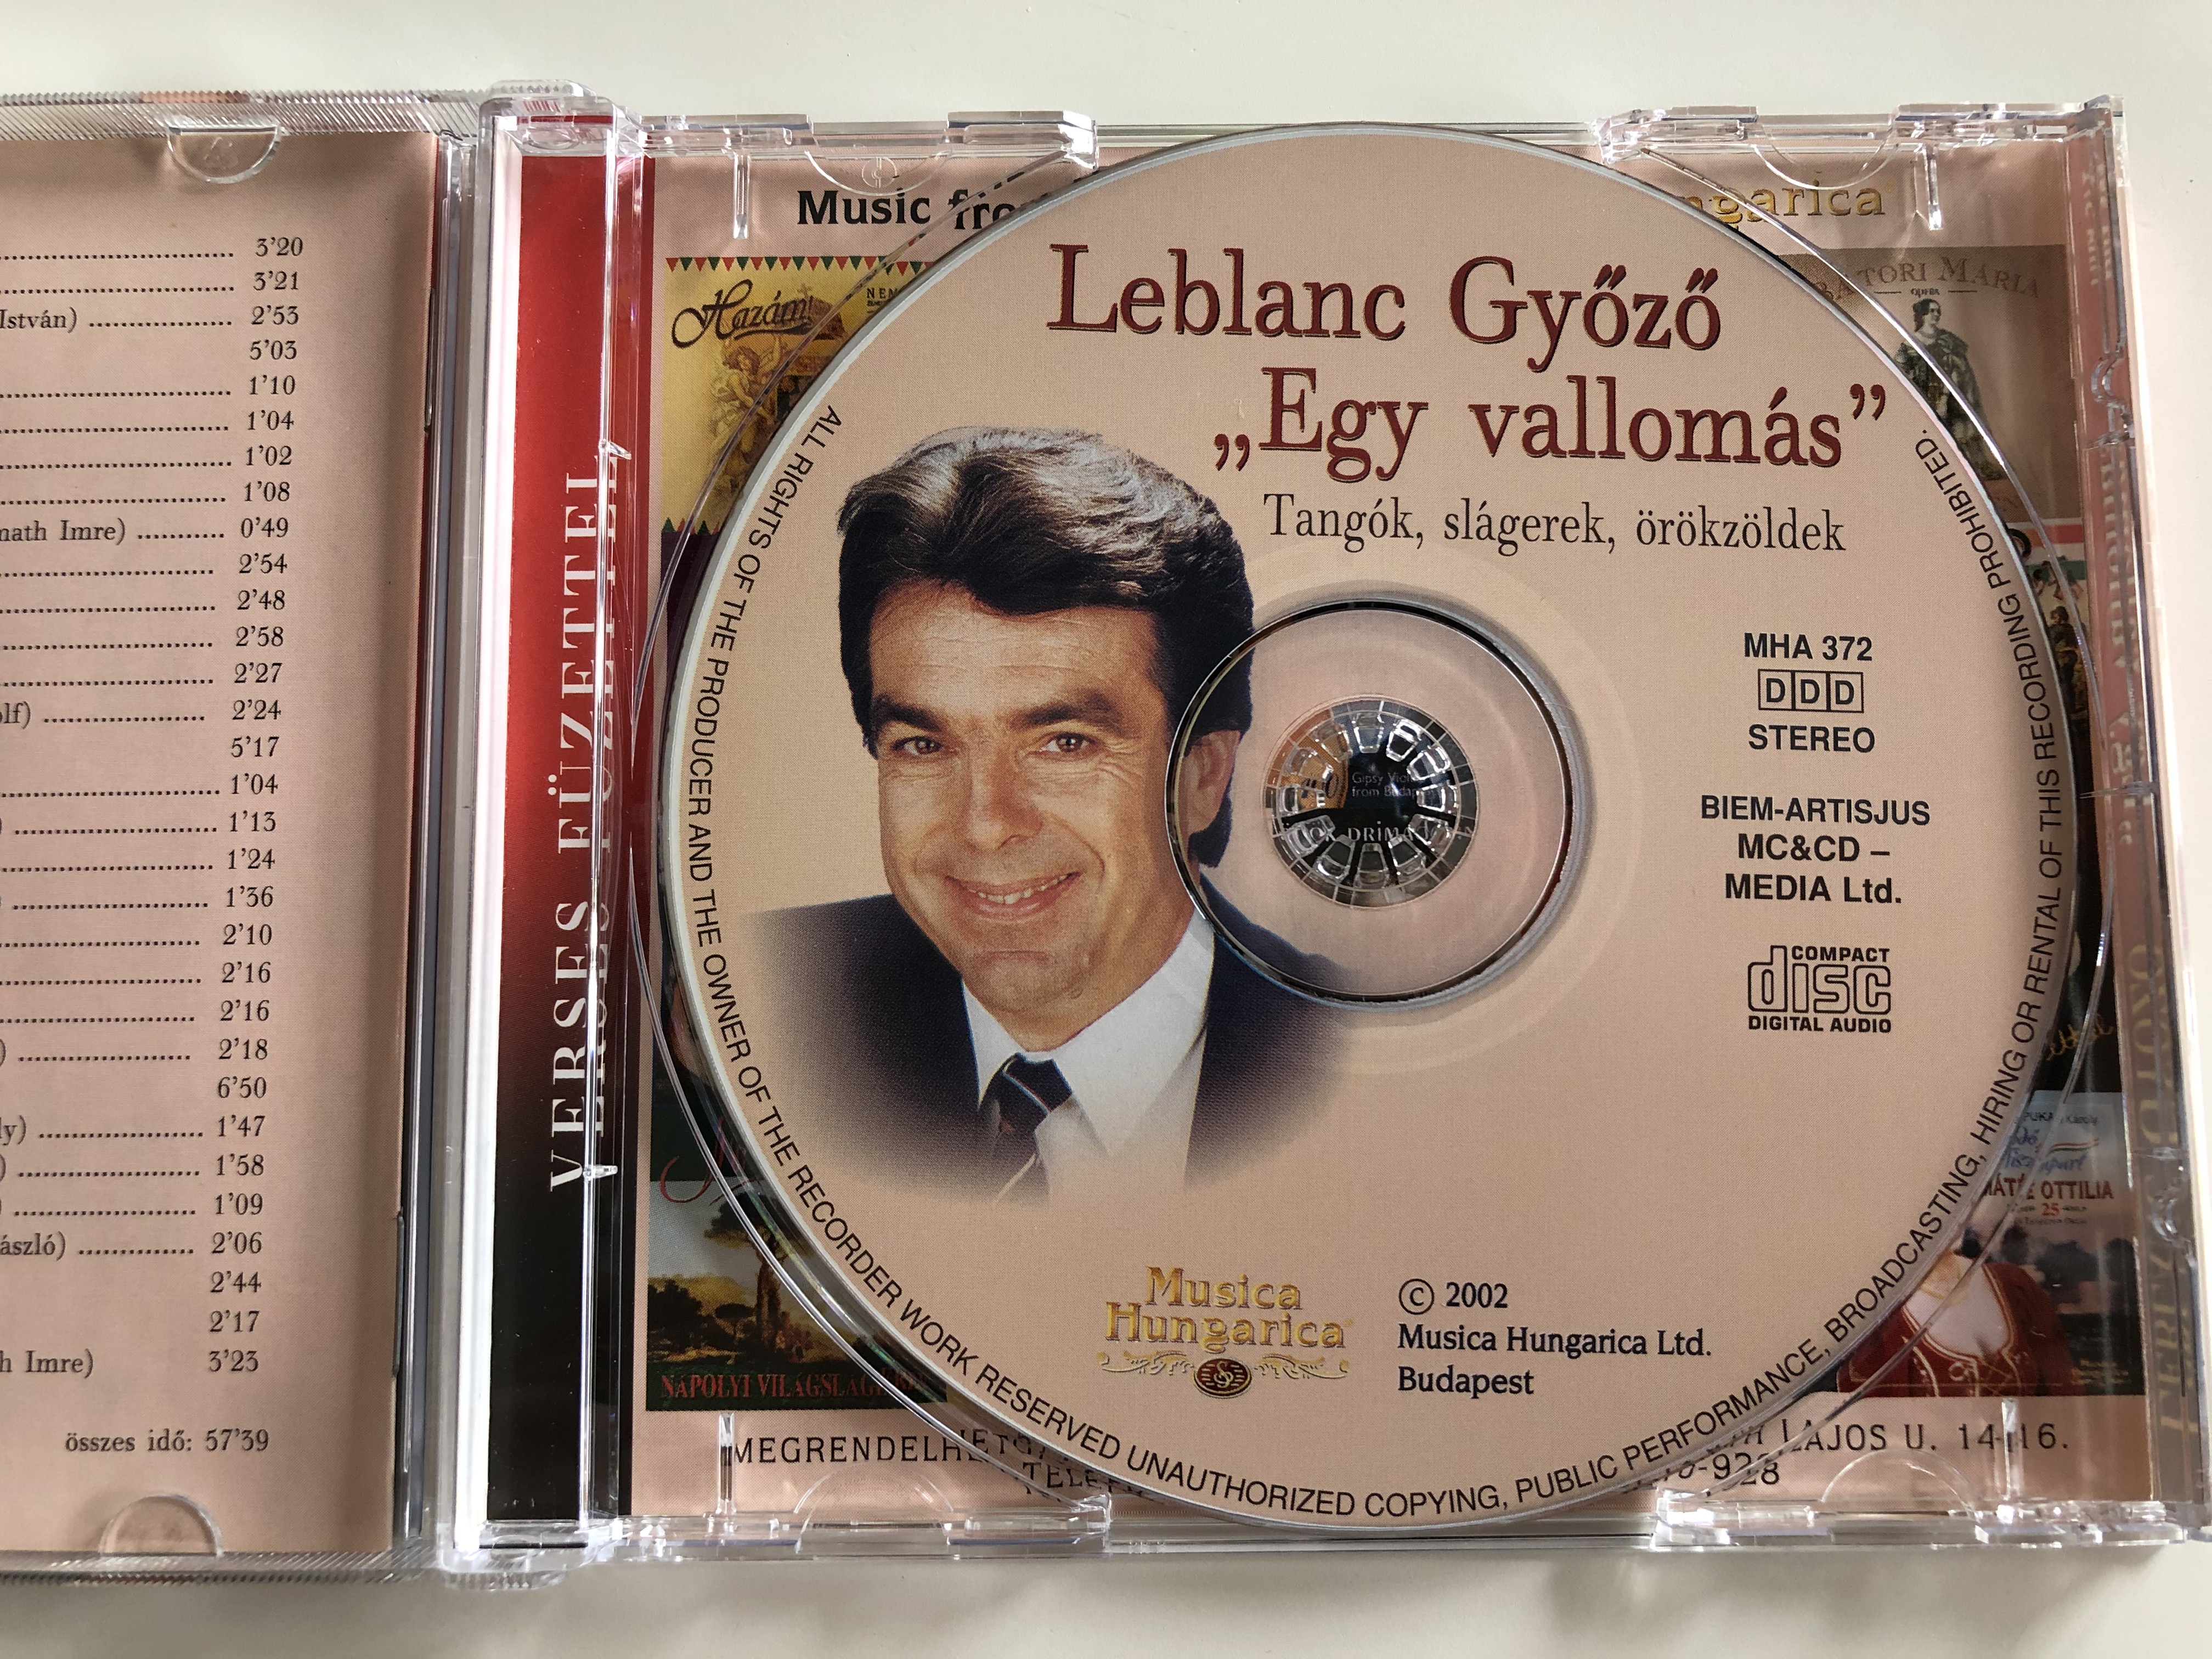 leblanc-gy-z-egy-vallomas-tangok-slagerek-orokzoldek-fenyes-eisemann-buday-zerkovitz-horvath-jeno-seress-musica-hungarica-ltd.-audio-cd-2002-stereo-mha-372-8-.jpg